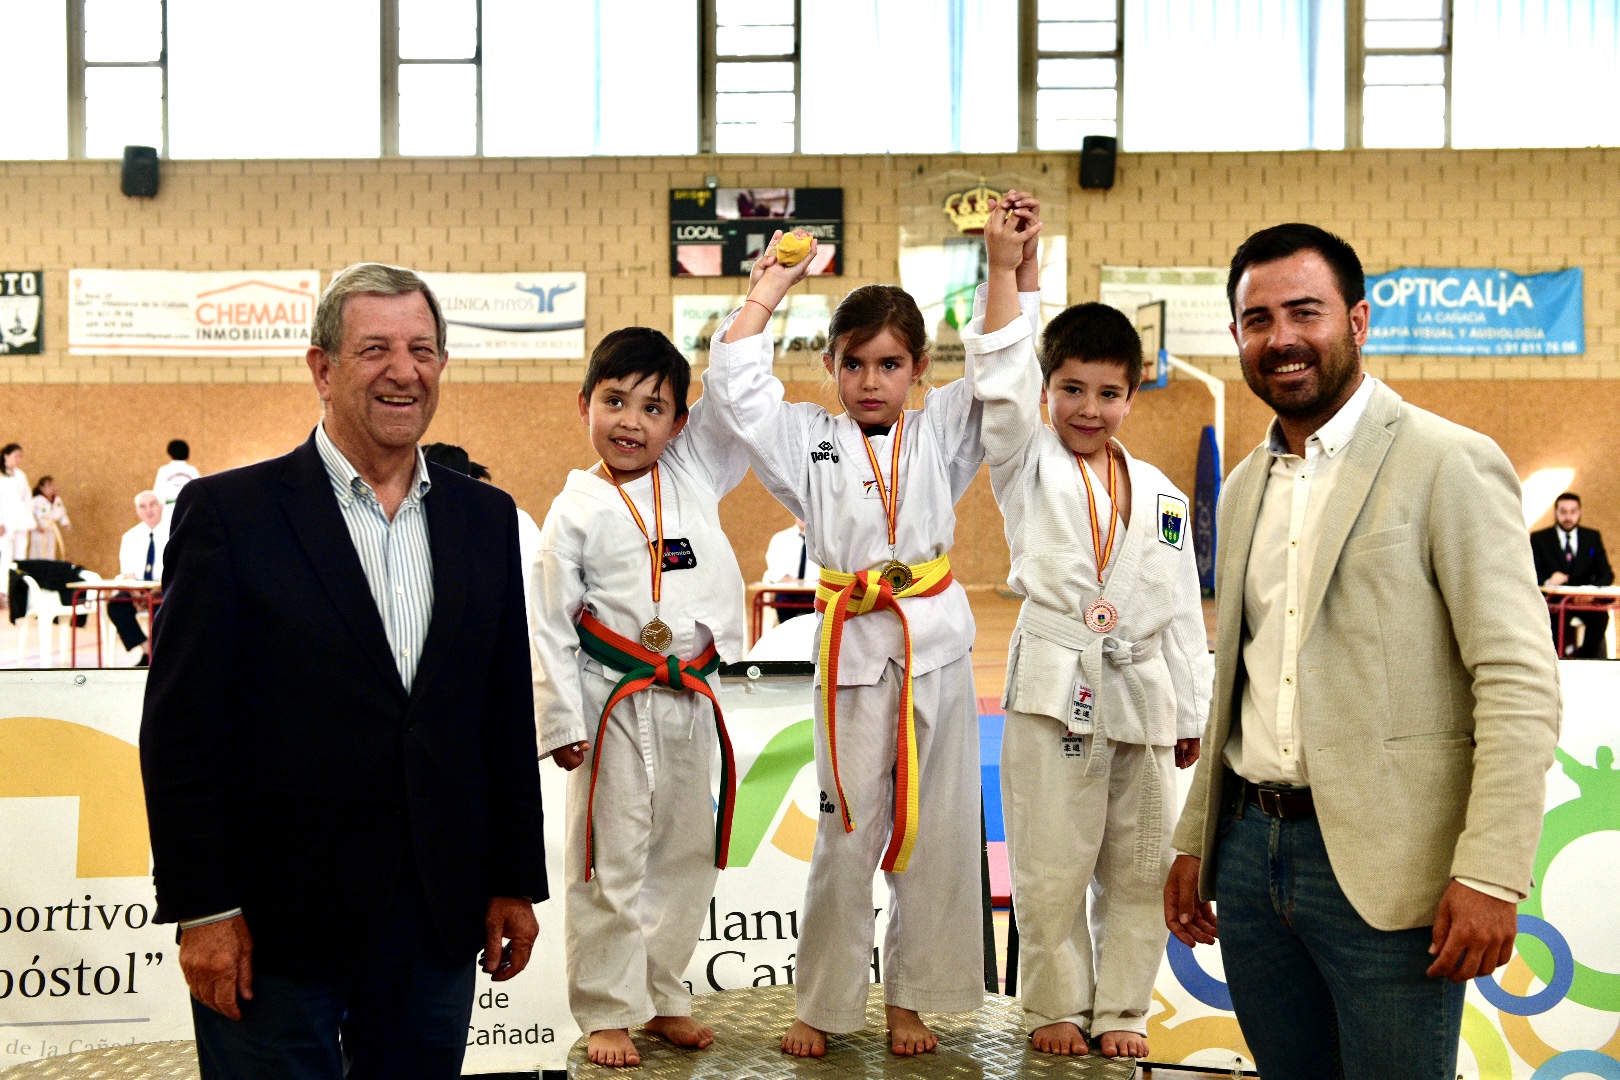 El alcalde, Luis Partida, y el concejal de Deportes, Ignacio González, junto a los participantes del Campeonato de Taekwondo.